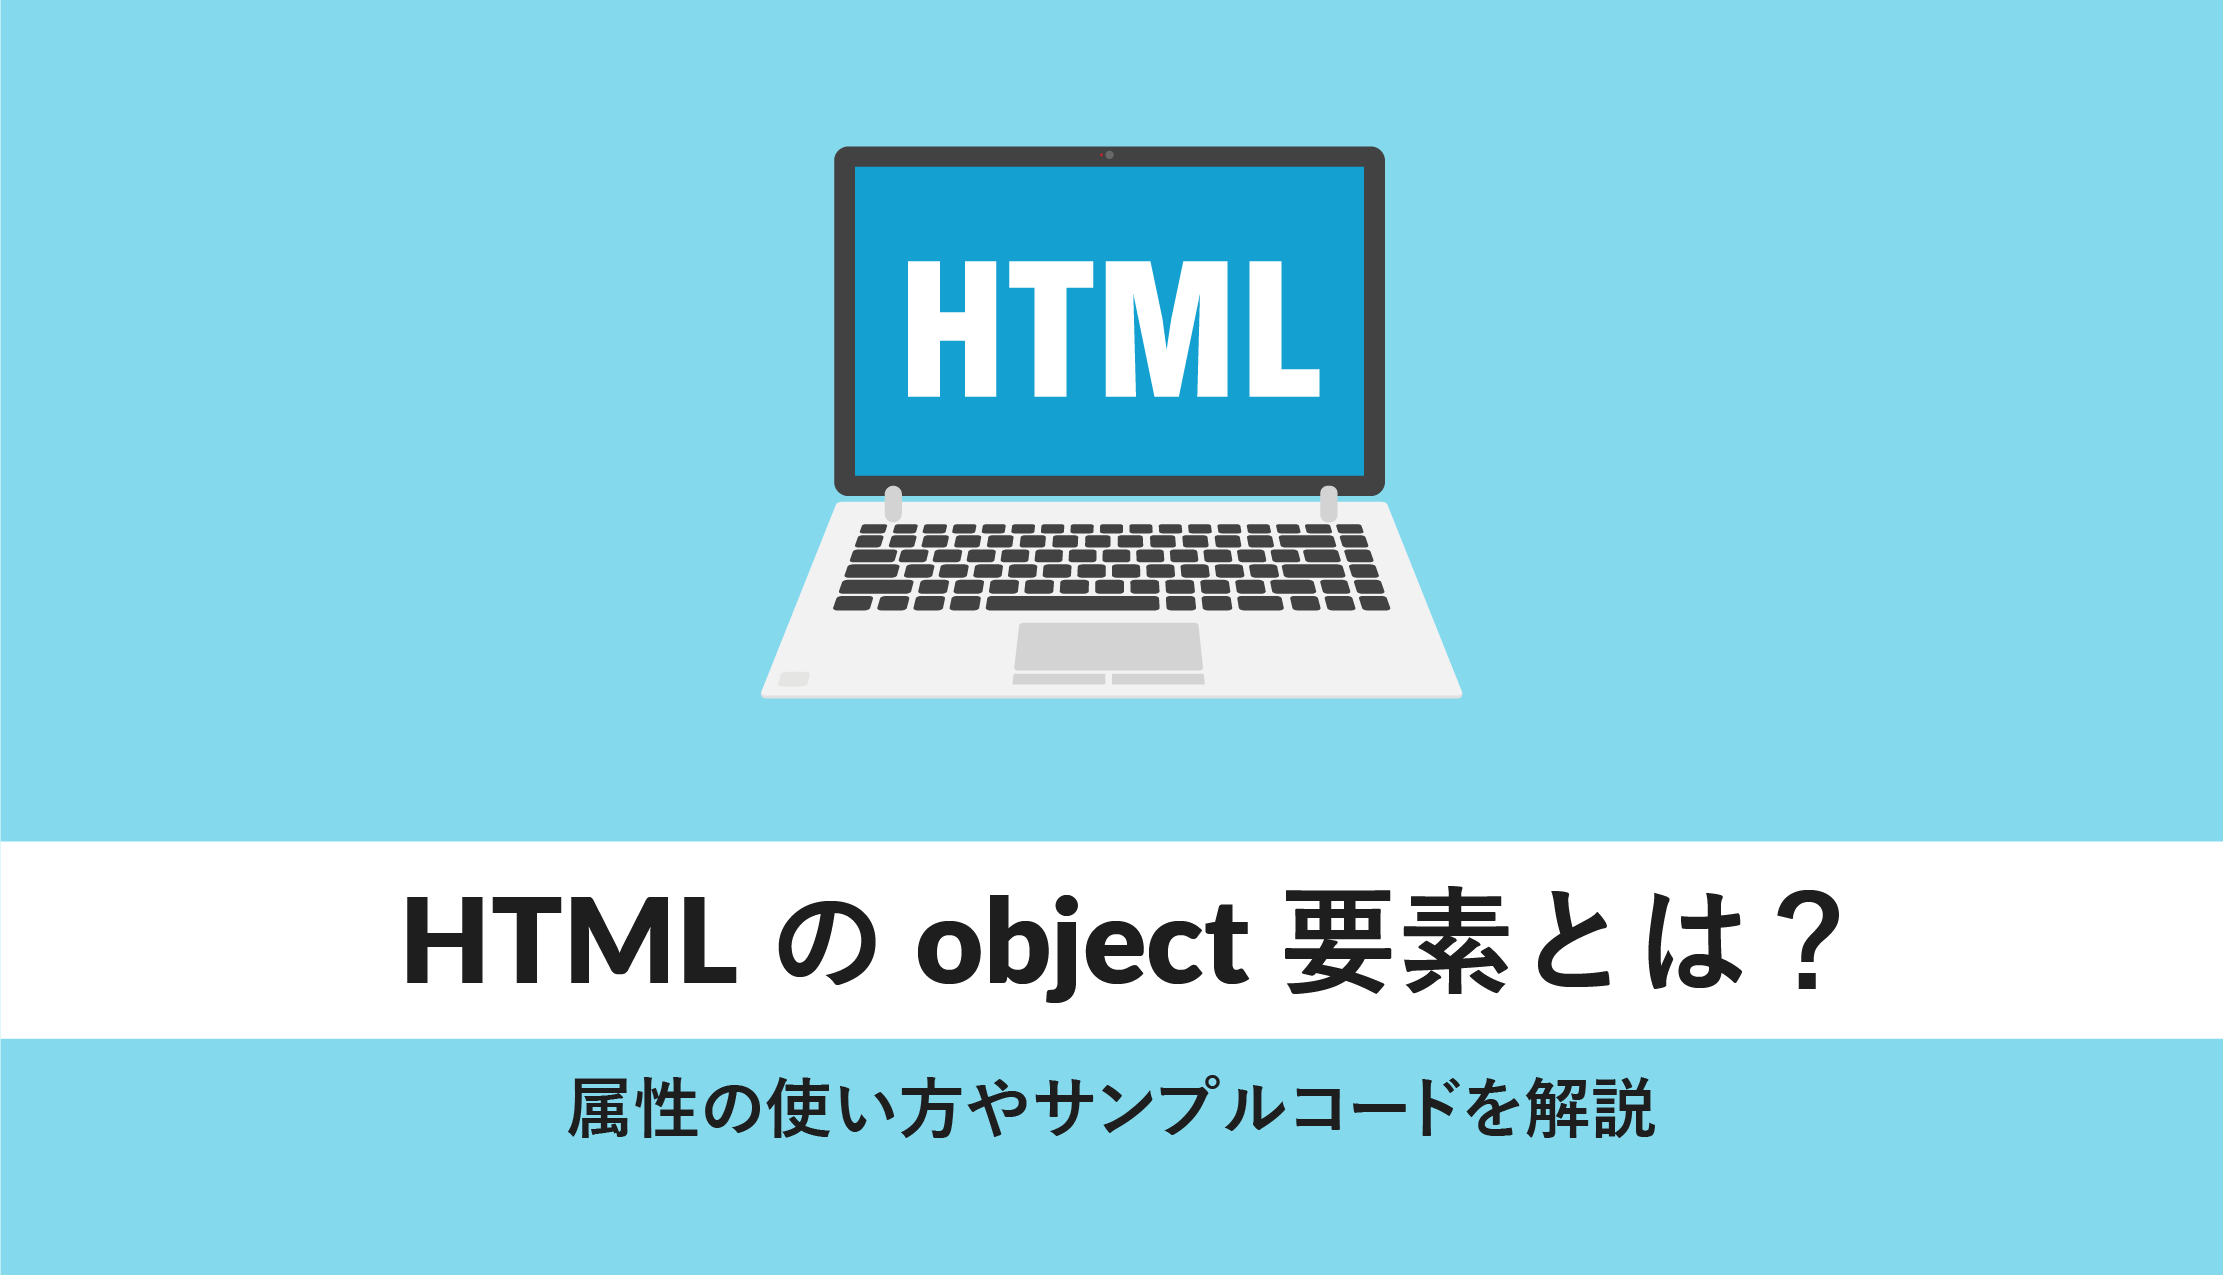 html object